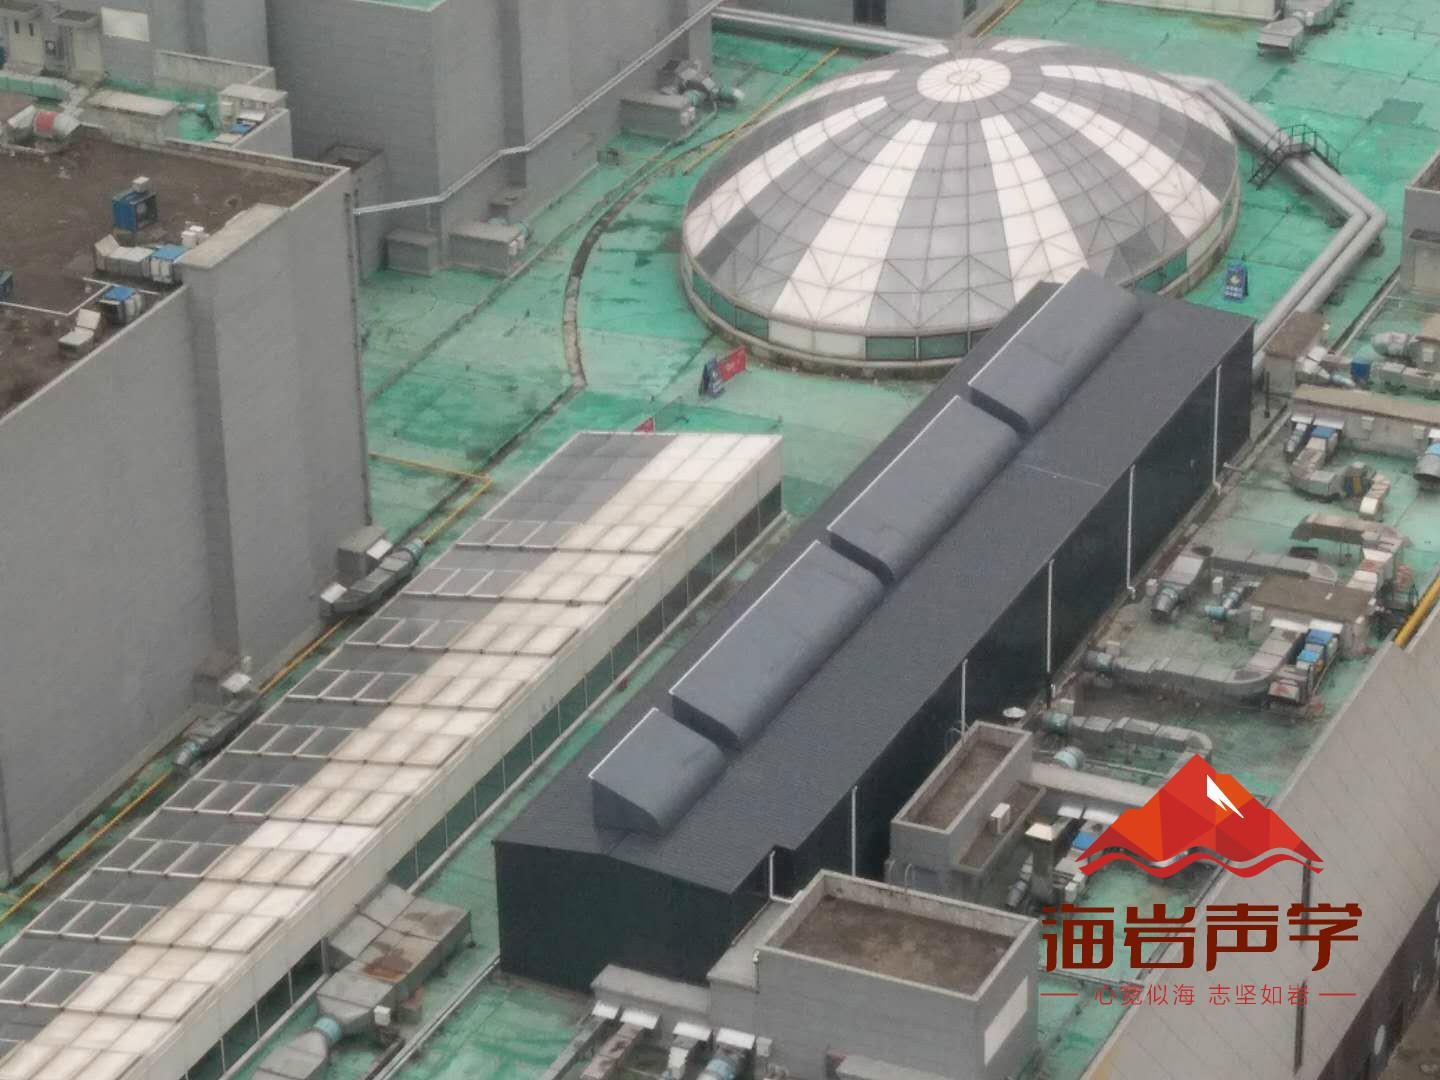 保山工业降噪设计 四川海岩声学科技有限公司